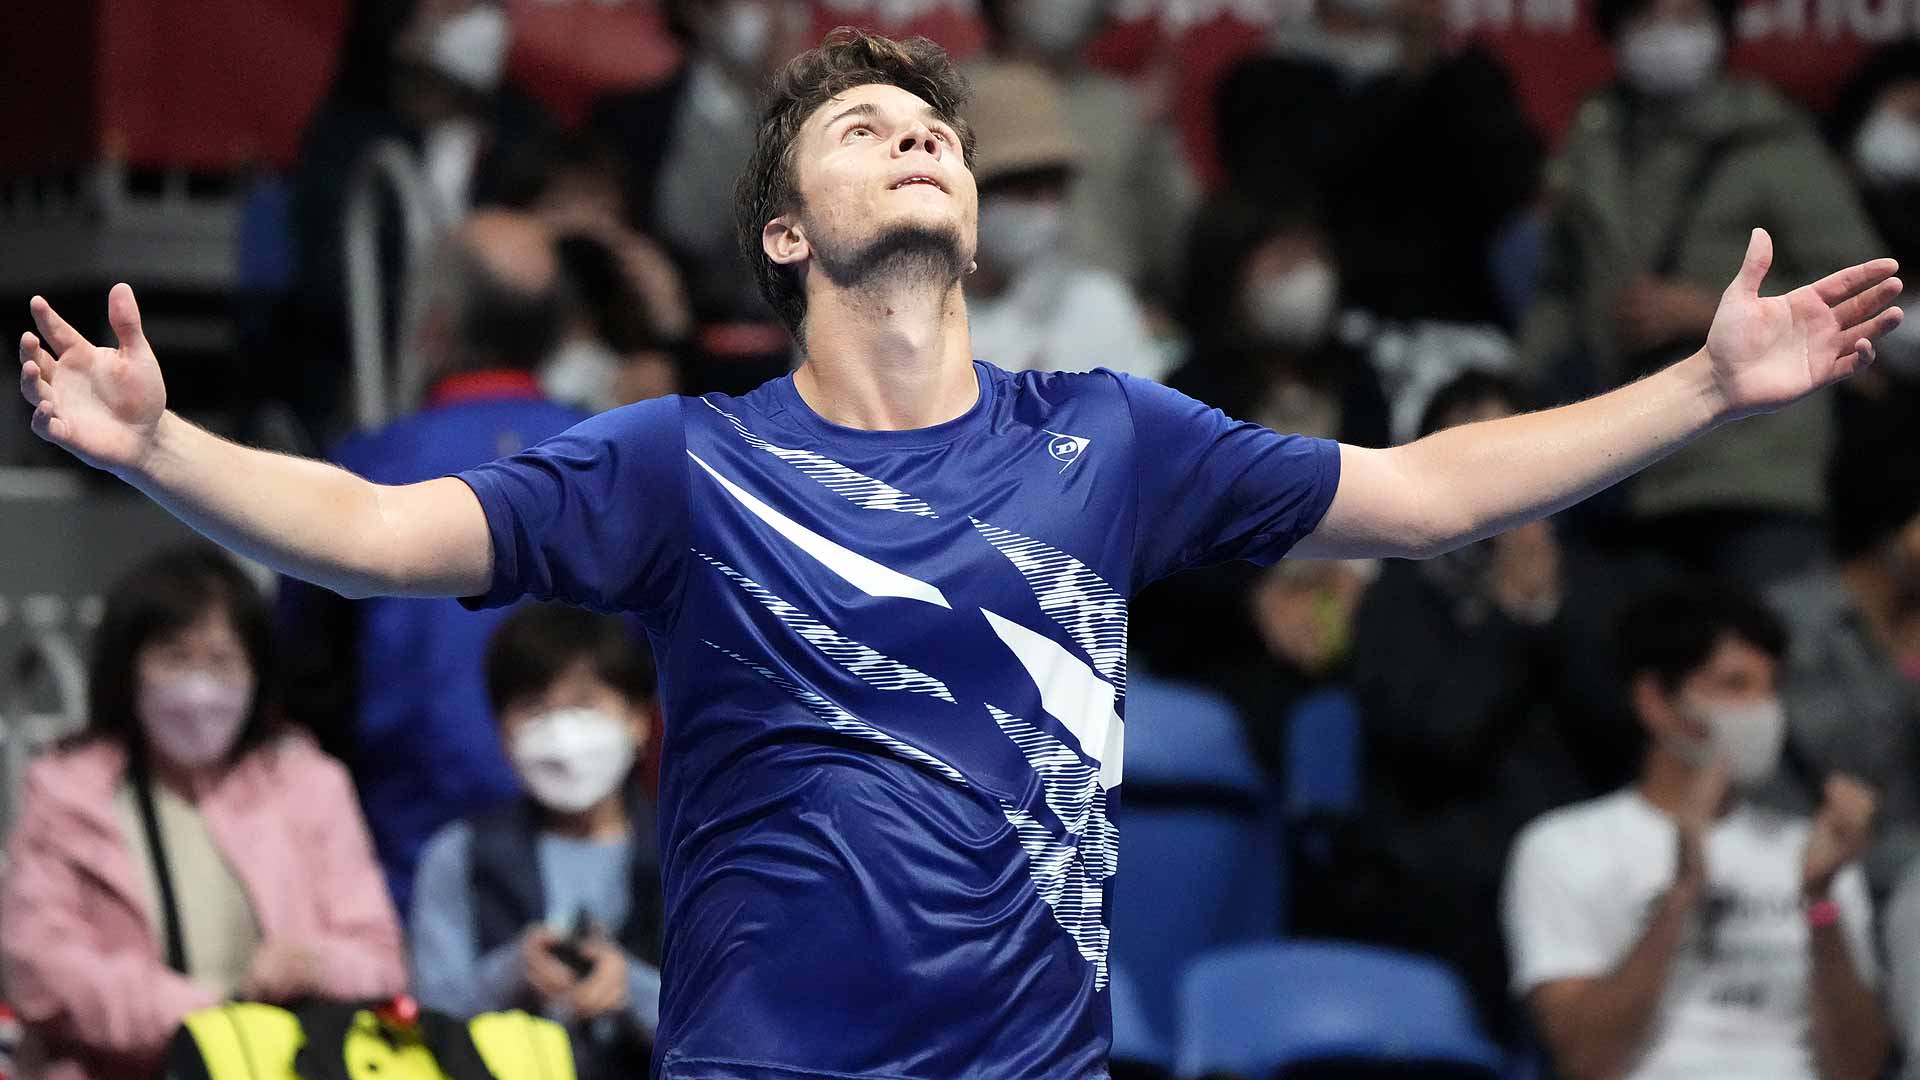 Miomir Kecmanovic Saves 6 MPs To Stun Daniel Evans In Tokyo ATP Tour Tennis